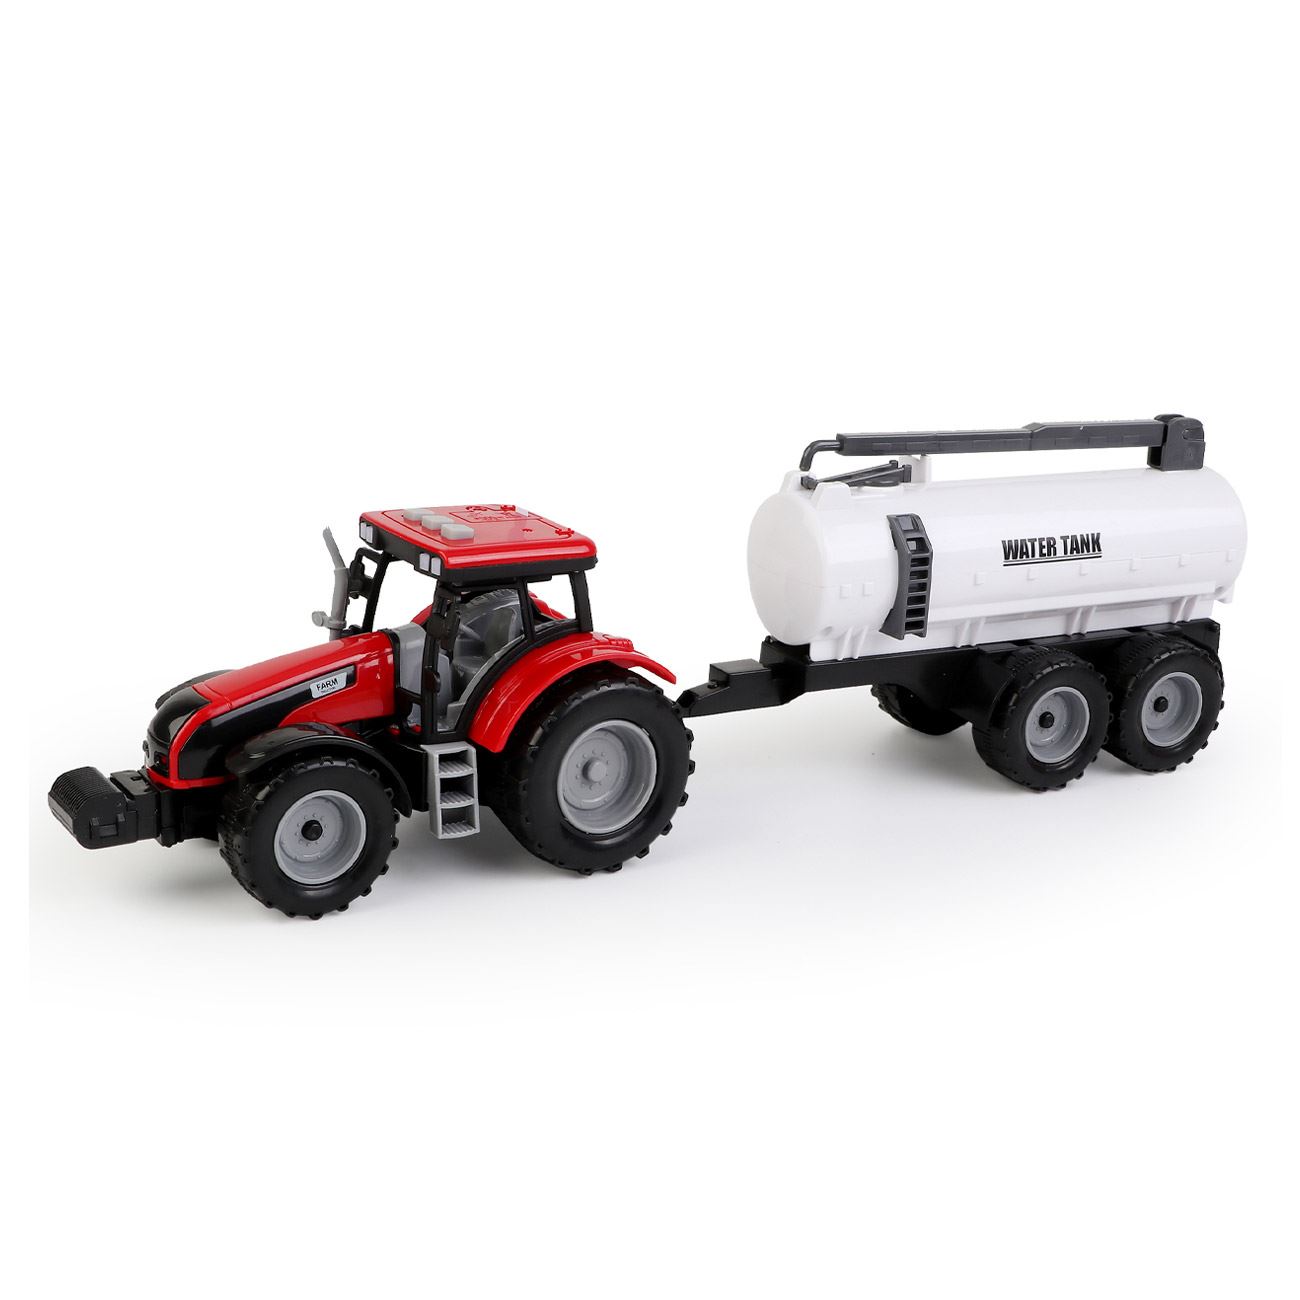 Traktor jármű víztartó hangokkal és fényekkel